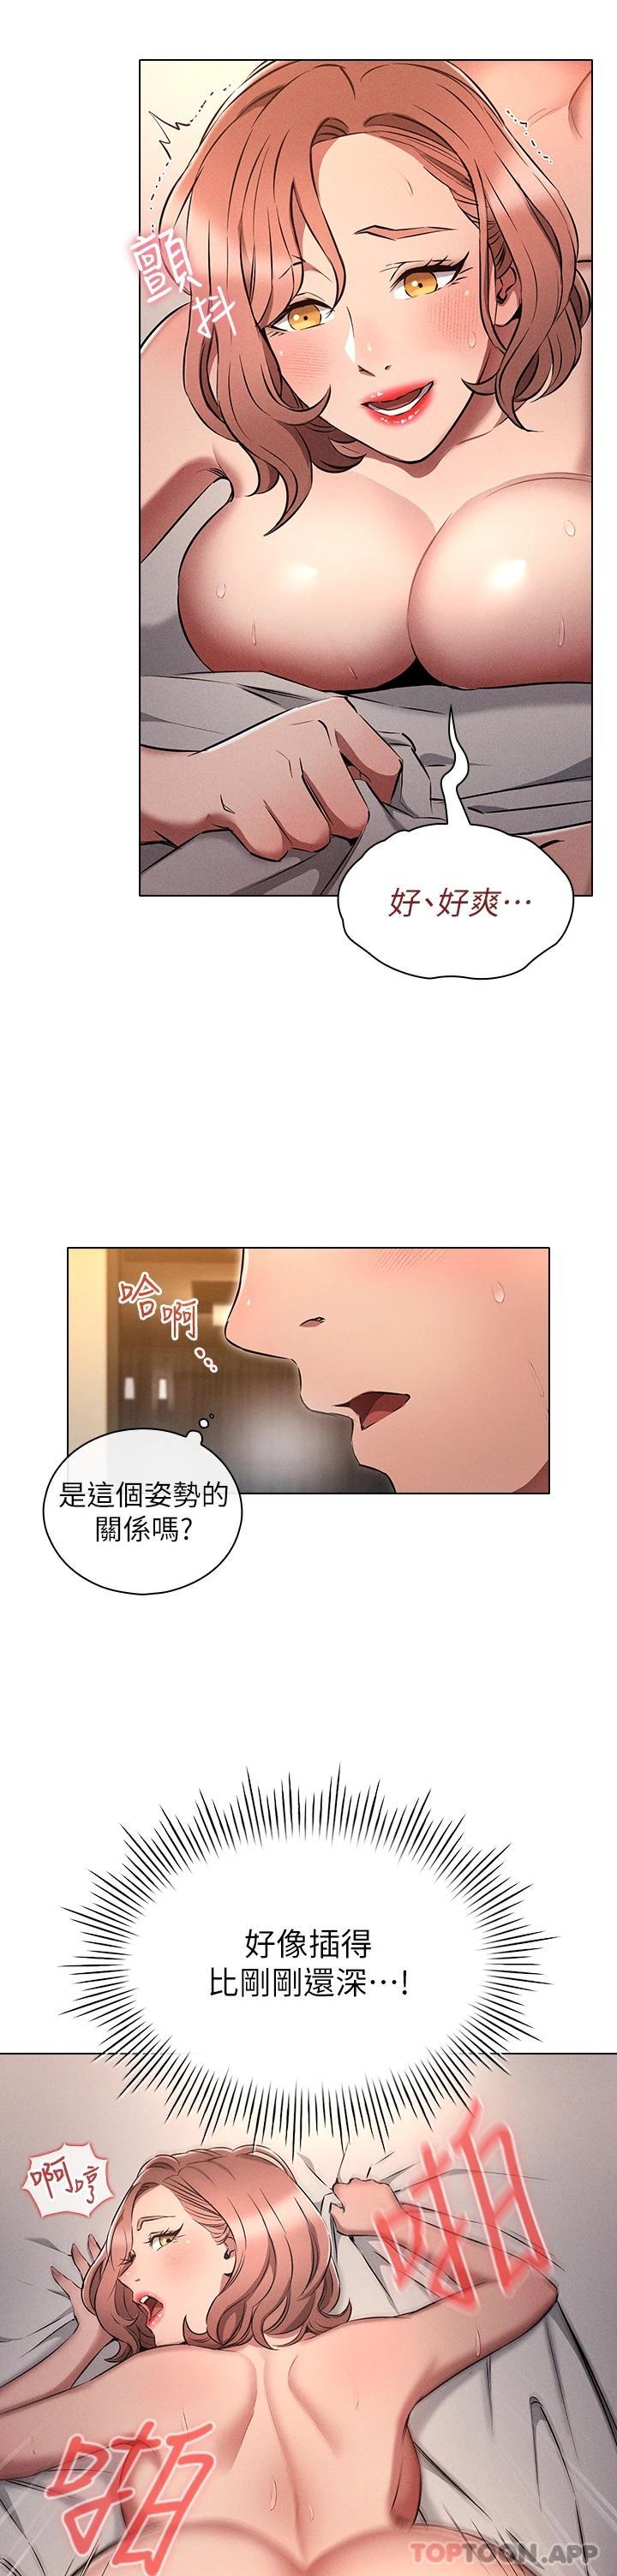 韩国污漫画 魯蛇的多重宇宙 第6话 从后面来更爽了 13